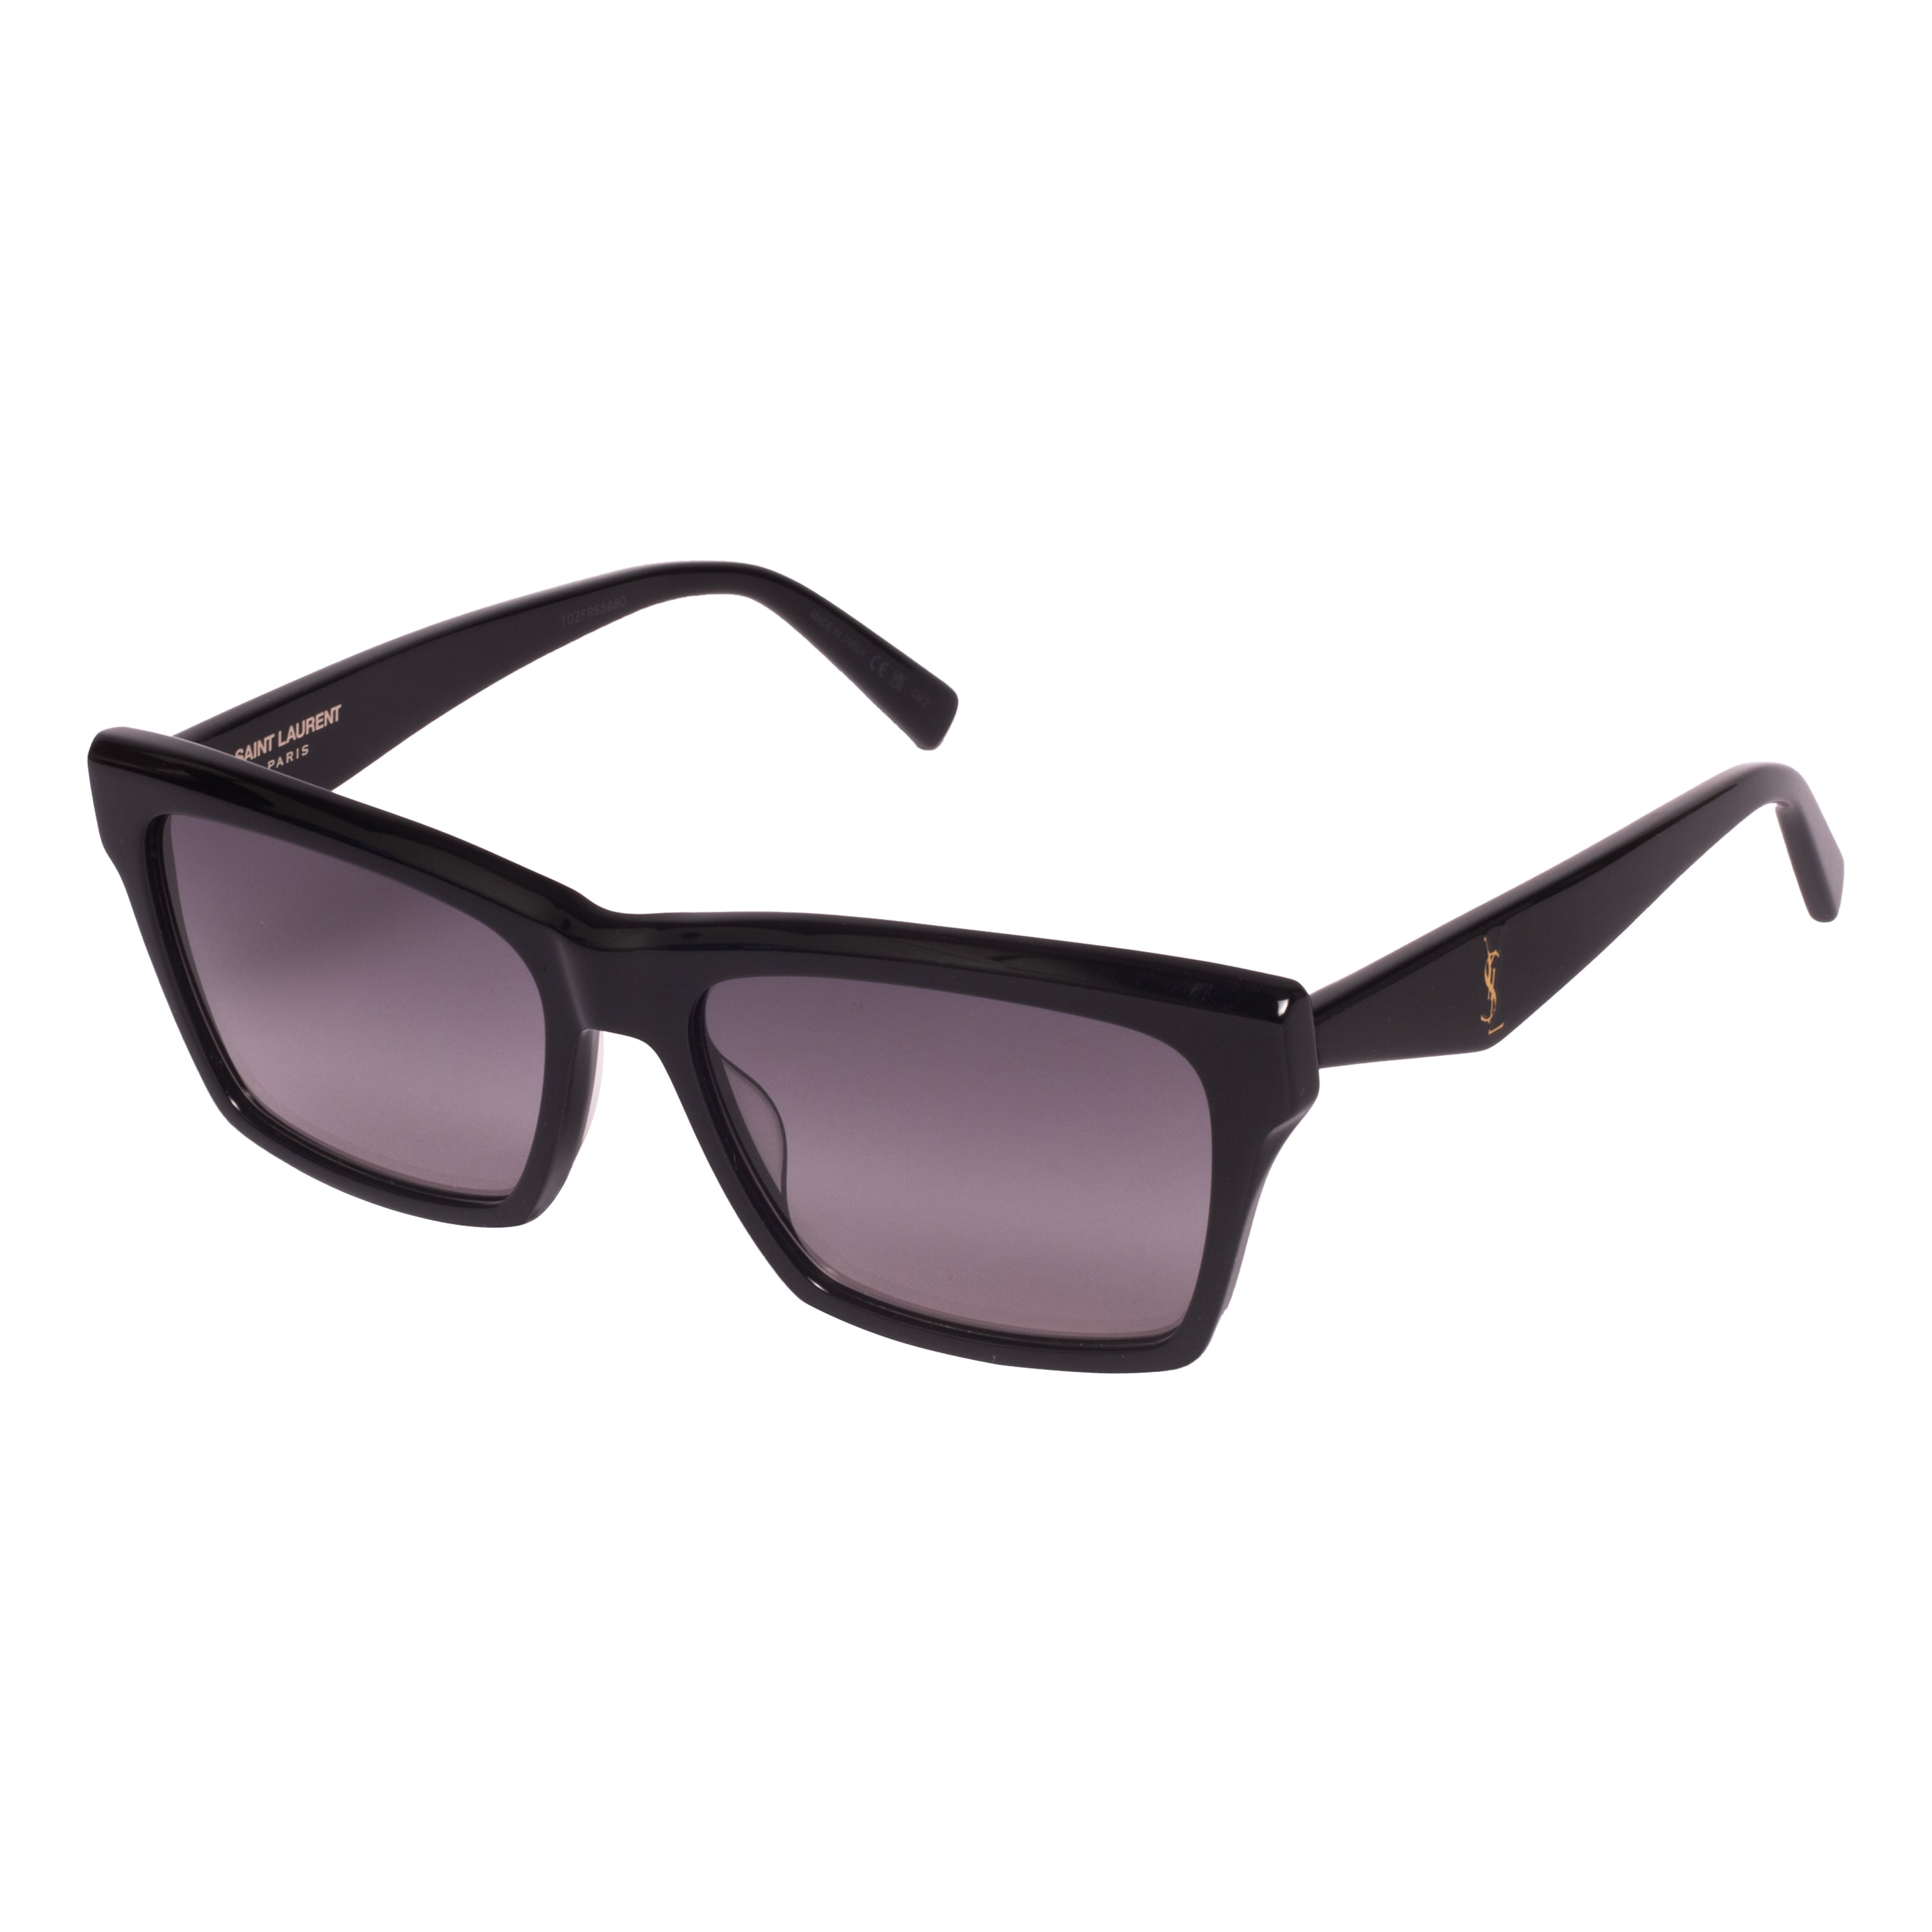 Saint Laurent-SL M104-56-001 Sunglasses - Premium Sunglasses from Saint Laurent - Just Rs. 24100! Shop now at Laxmi Opticians